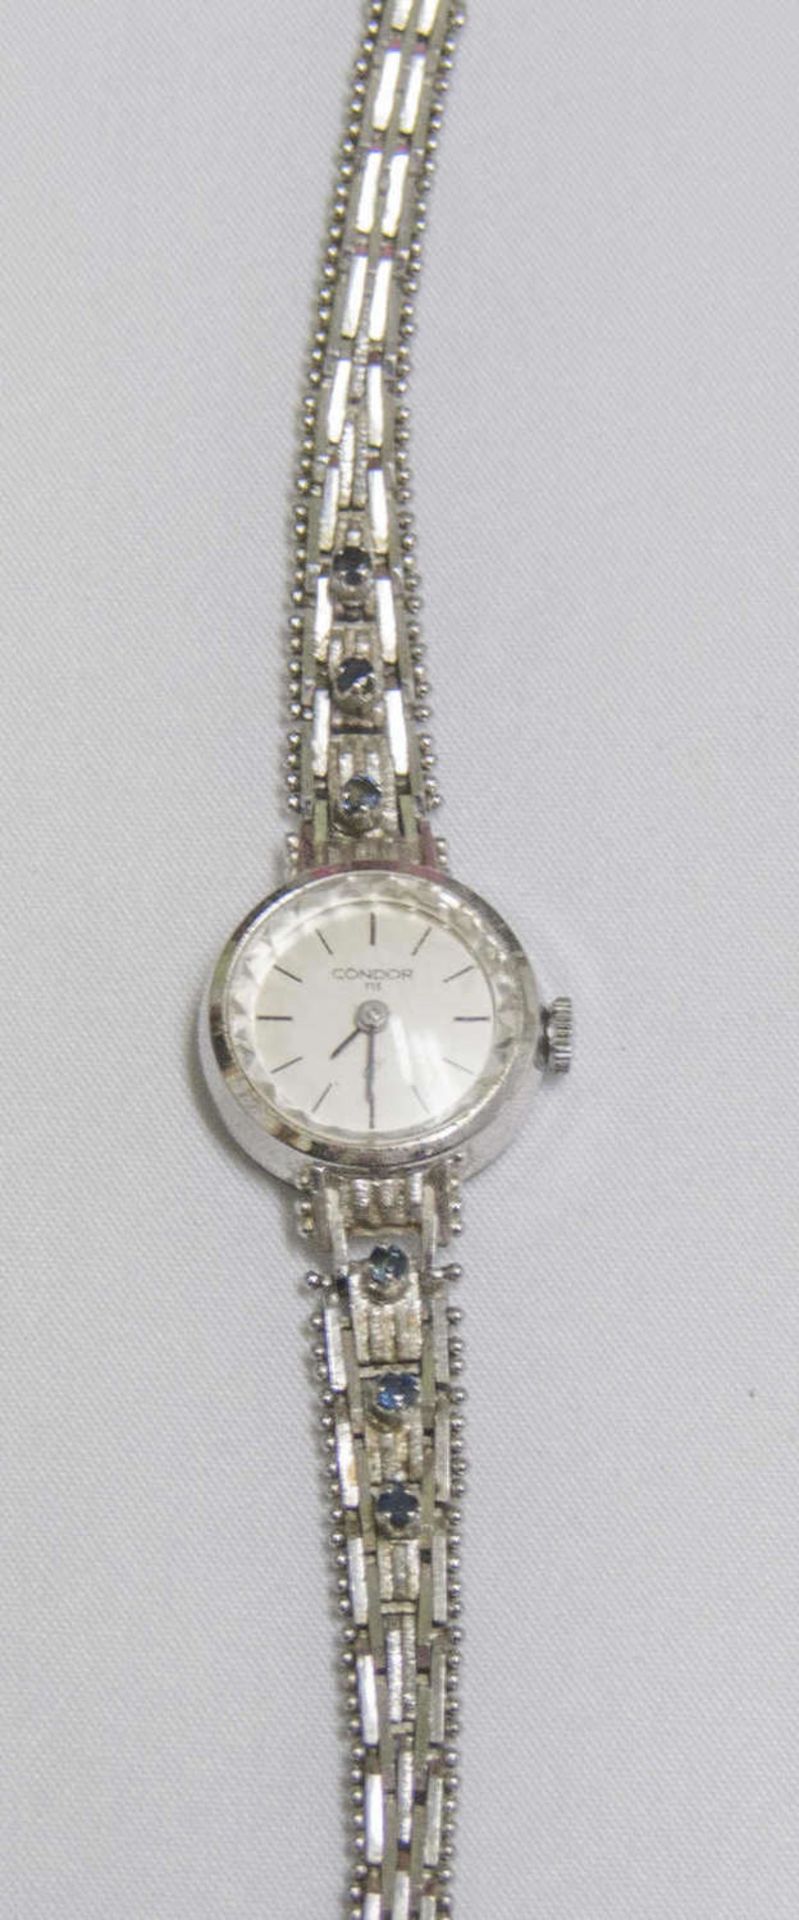 Damenarmbanduhr Condor, 835er Silber, Quarz. Länge ca. 17 cm.Lady's wristwatch Condor, 835 silver,